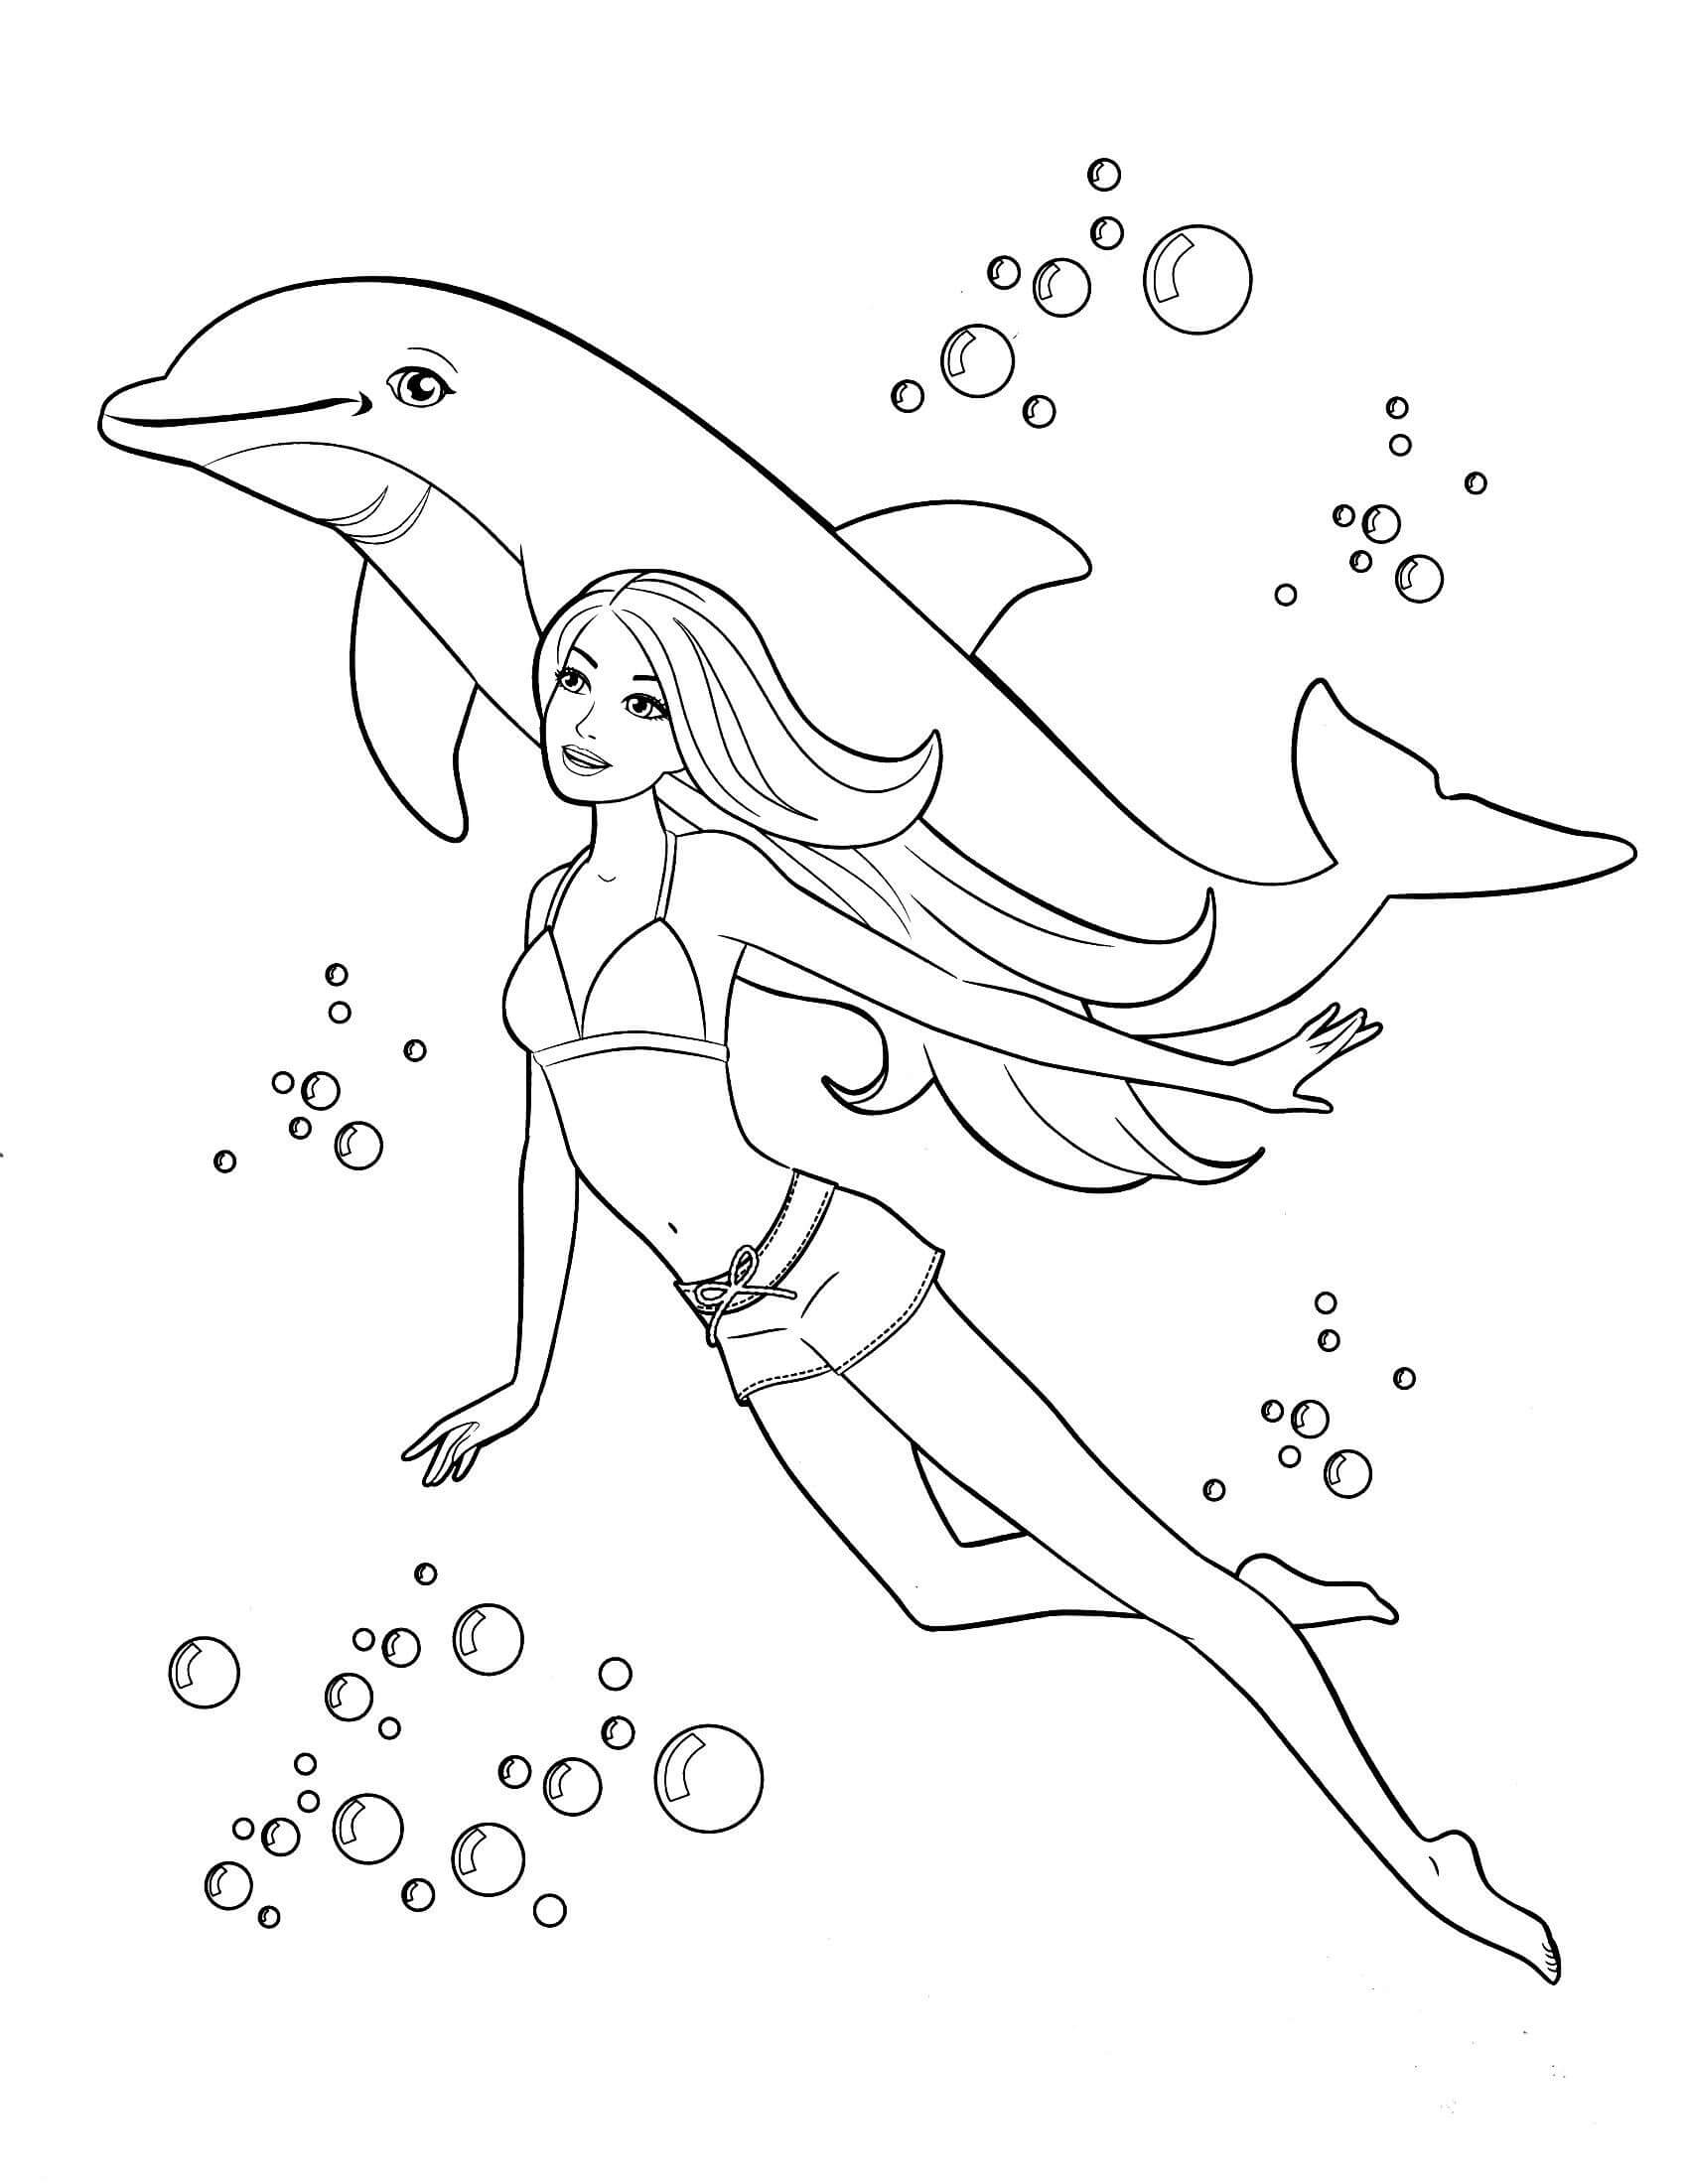 바비와 돌고래 수영 coloring page